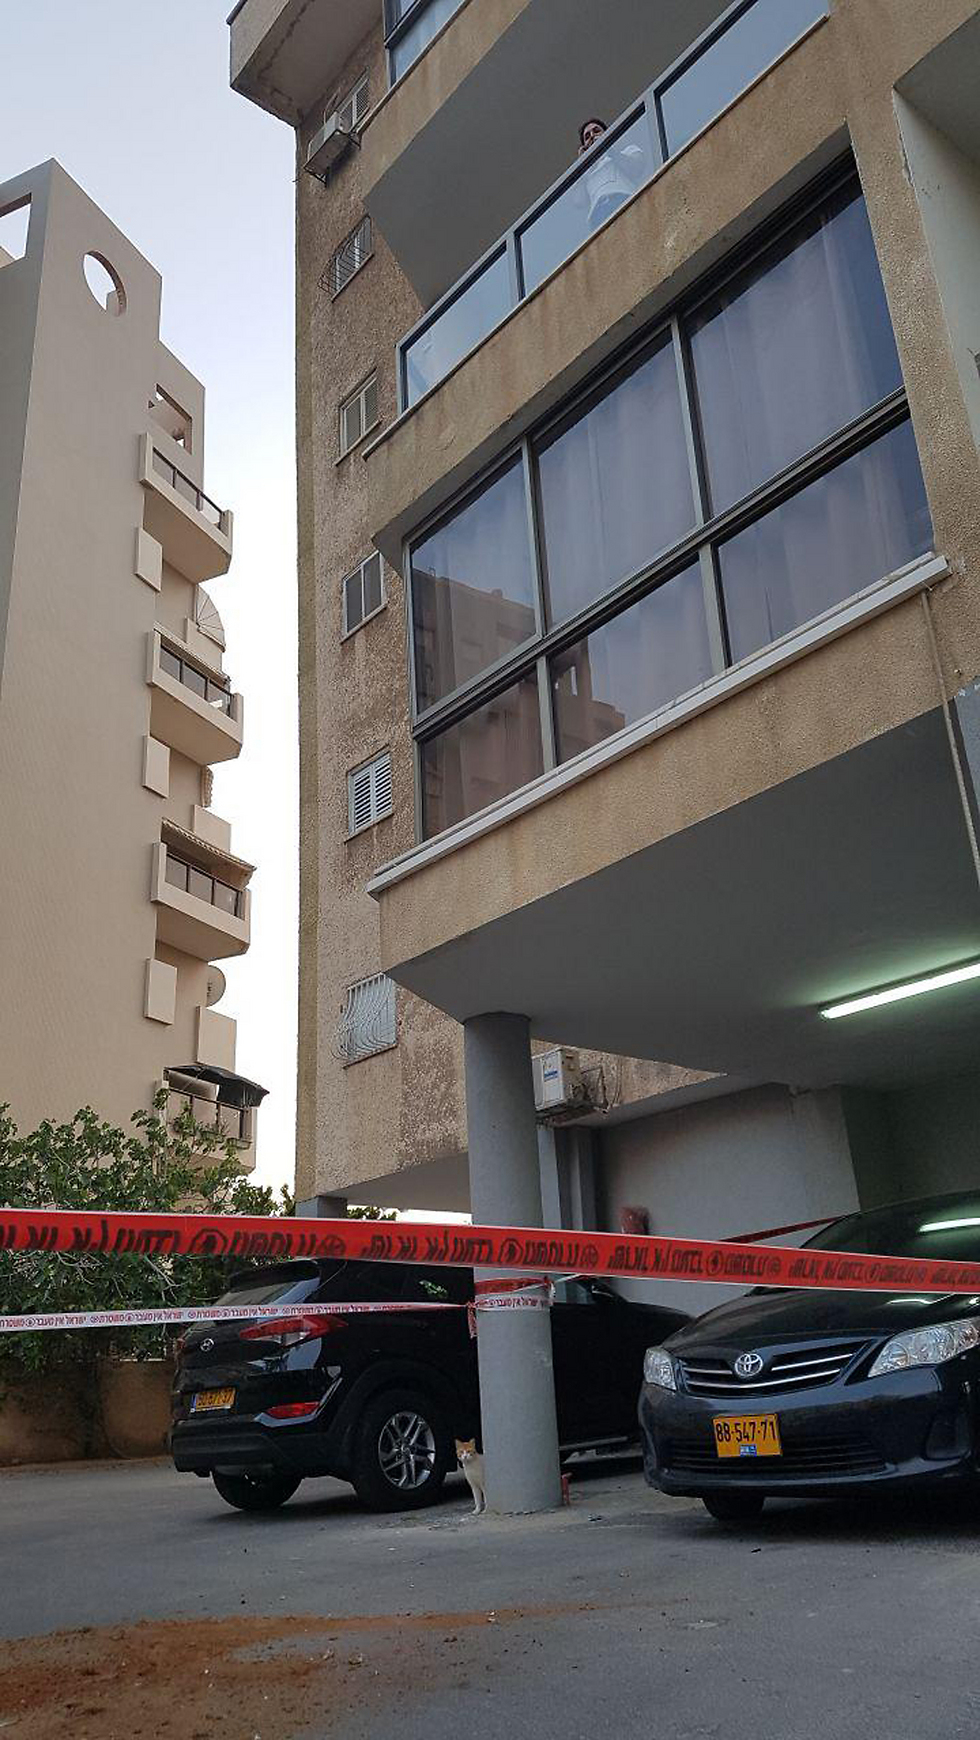 הבניין שממנו צנח האיש אל מותו באשדוד (צילום: רועי עידן) (צילום: רועי עידן)